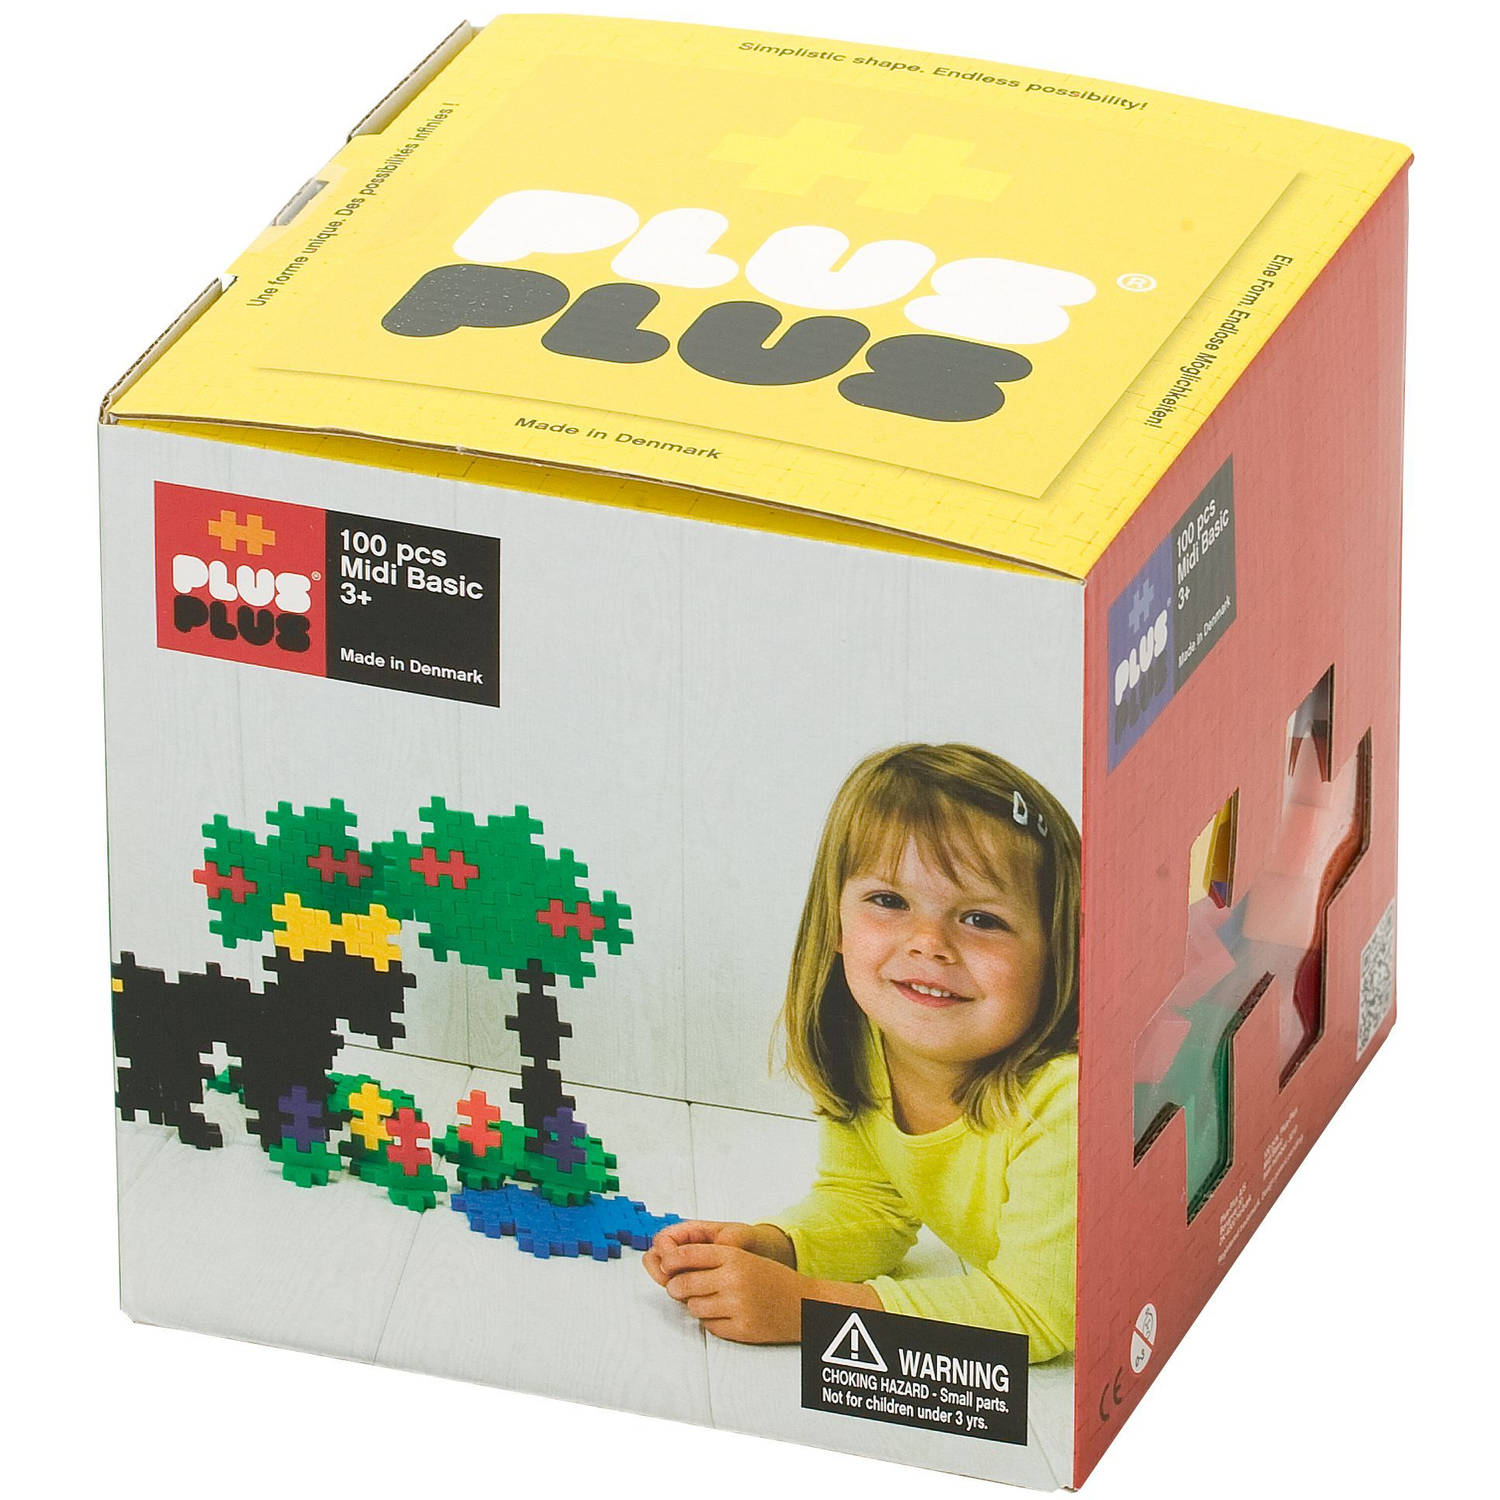 Plus-Plus - BIG Basic Colormix - Constructiespeelgoed - Set Met Bouwstenen - 100 Delige Bouwset - Bouwspeelgoed - Vanaf 3 Jaar